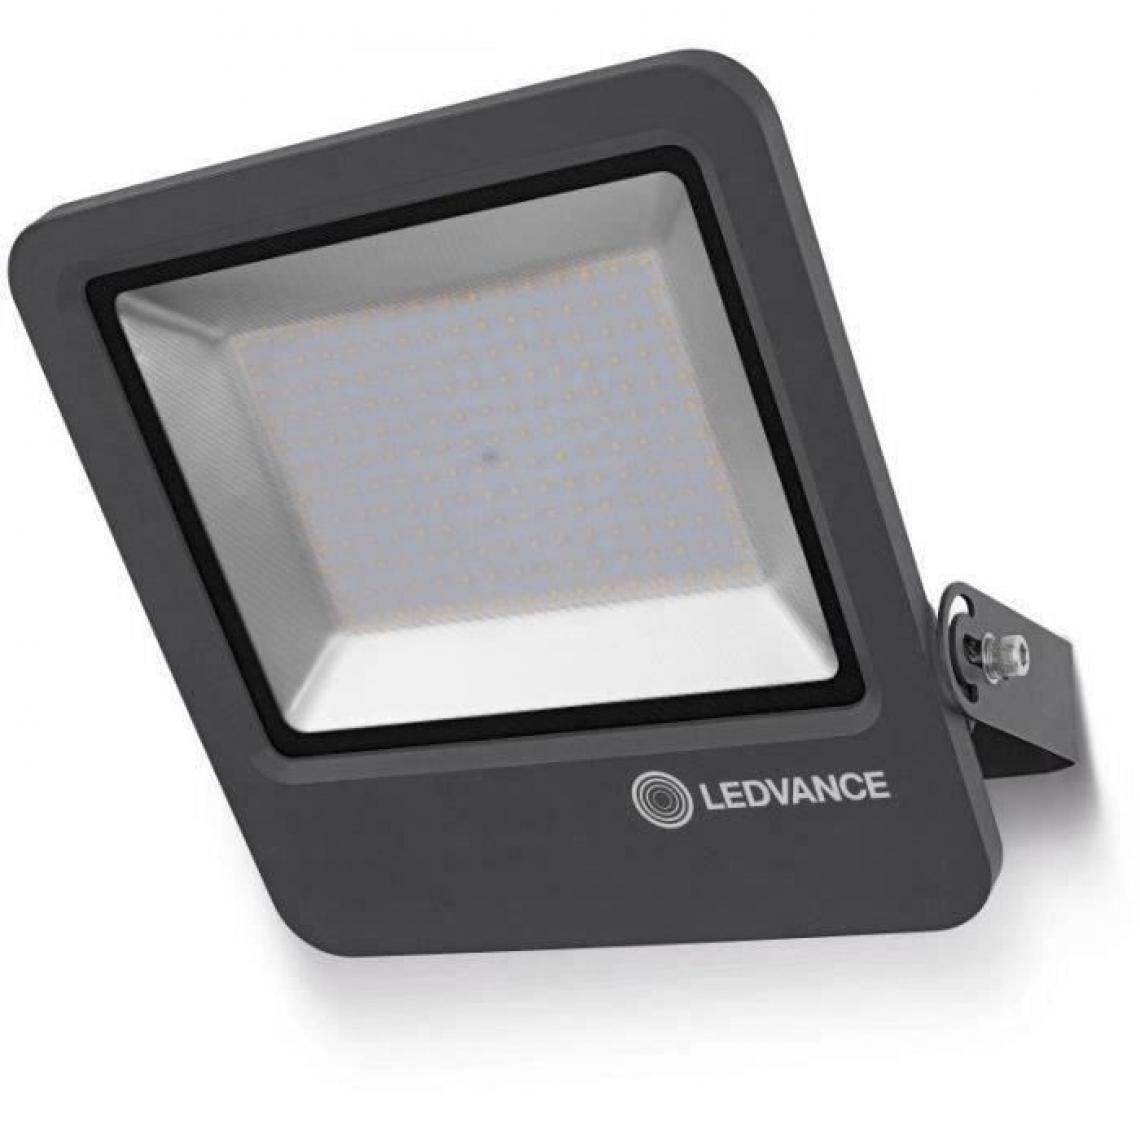 Ledvance - Projecteur LED extérieur - Spot, projecteur